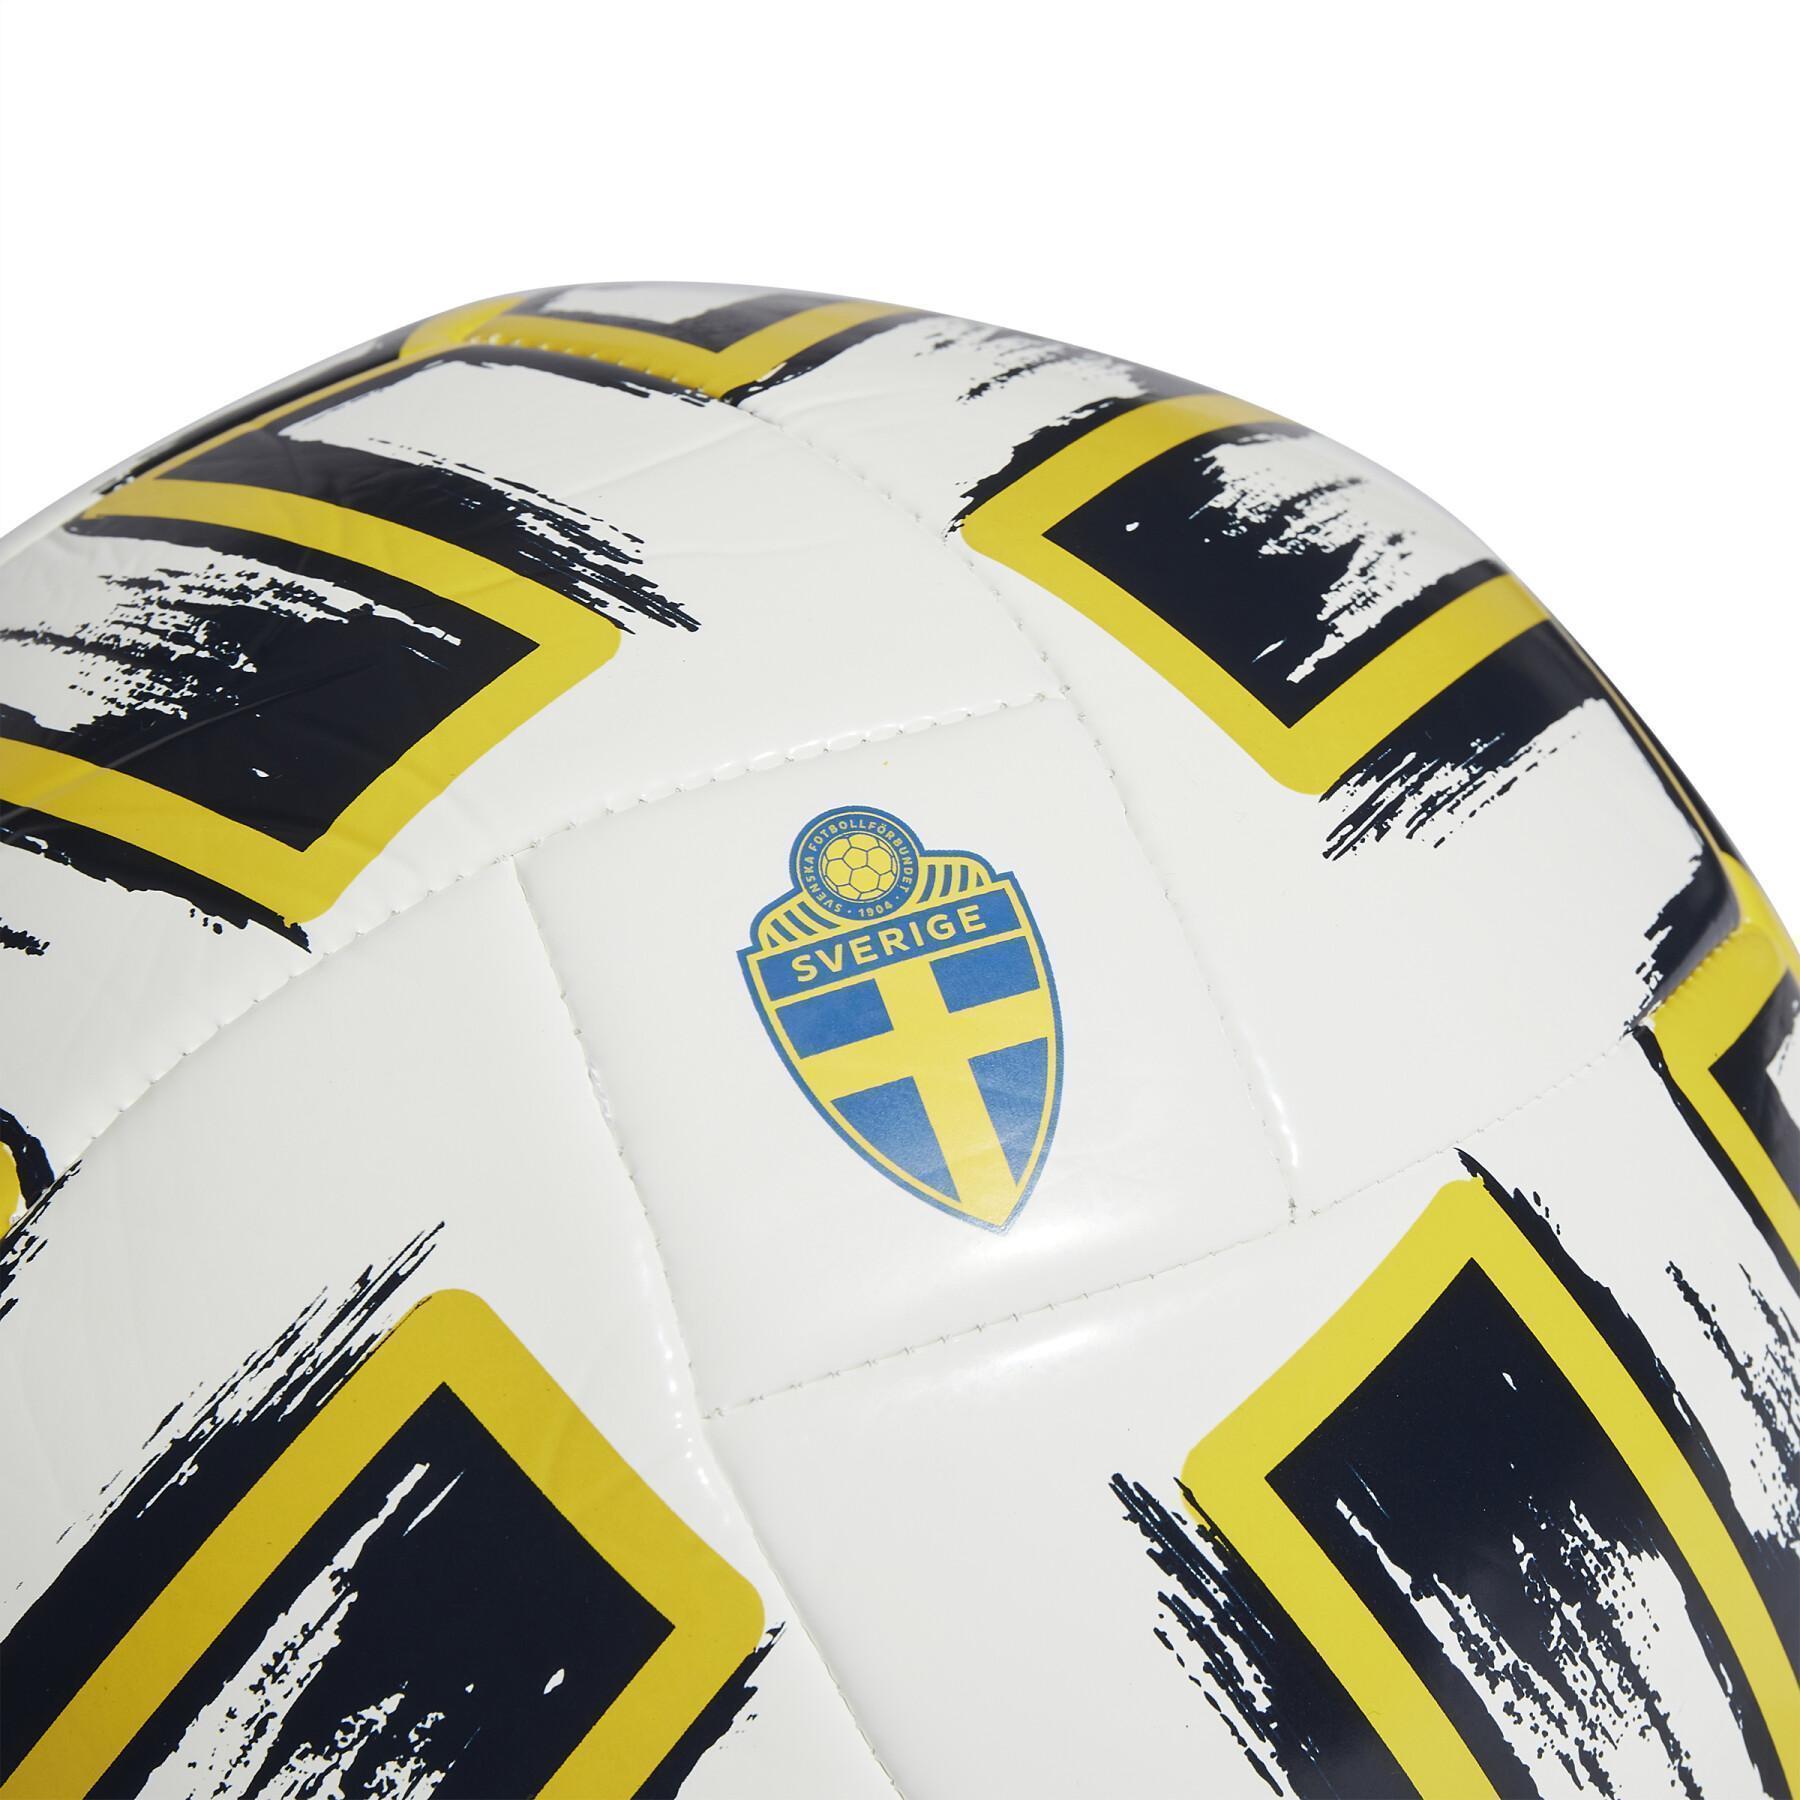 Ballong adidas Suède Club